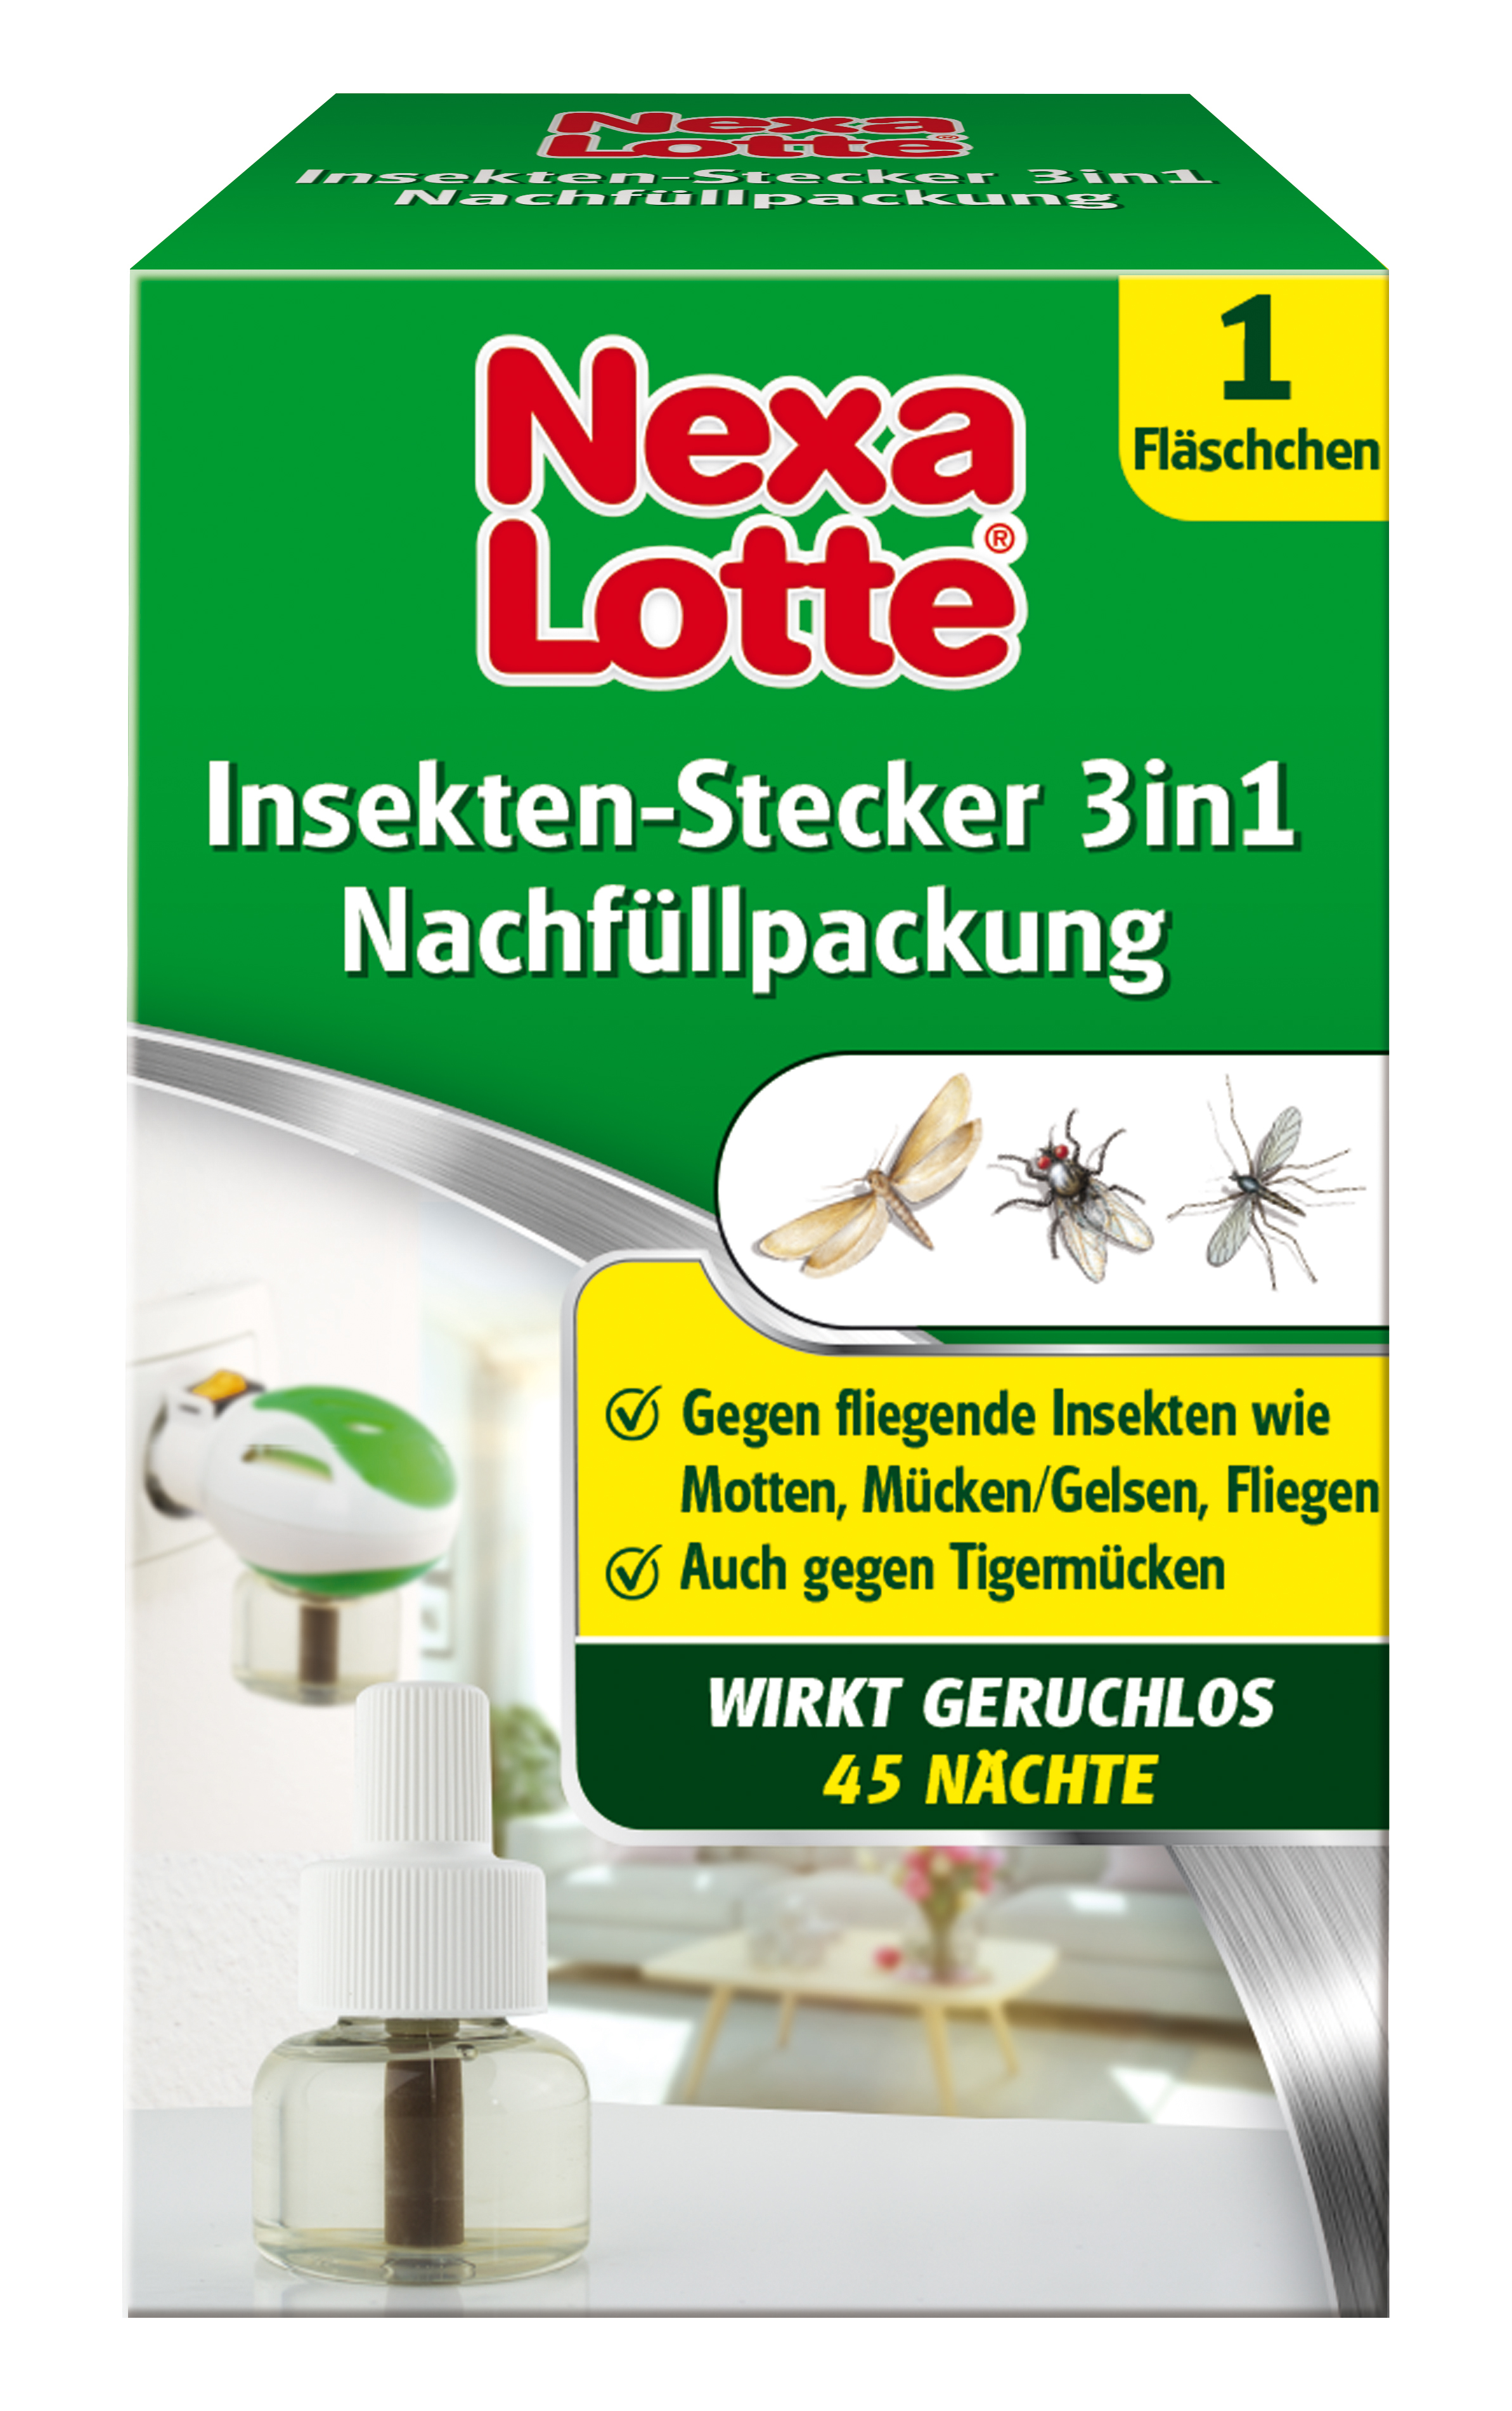 Nexa Lotte Insektenschutz 3in1 Nachfüllpackung